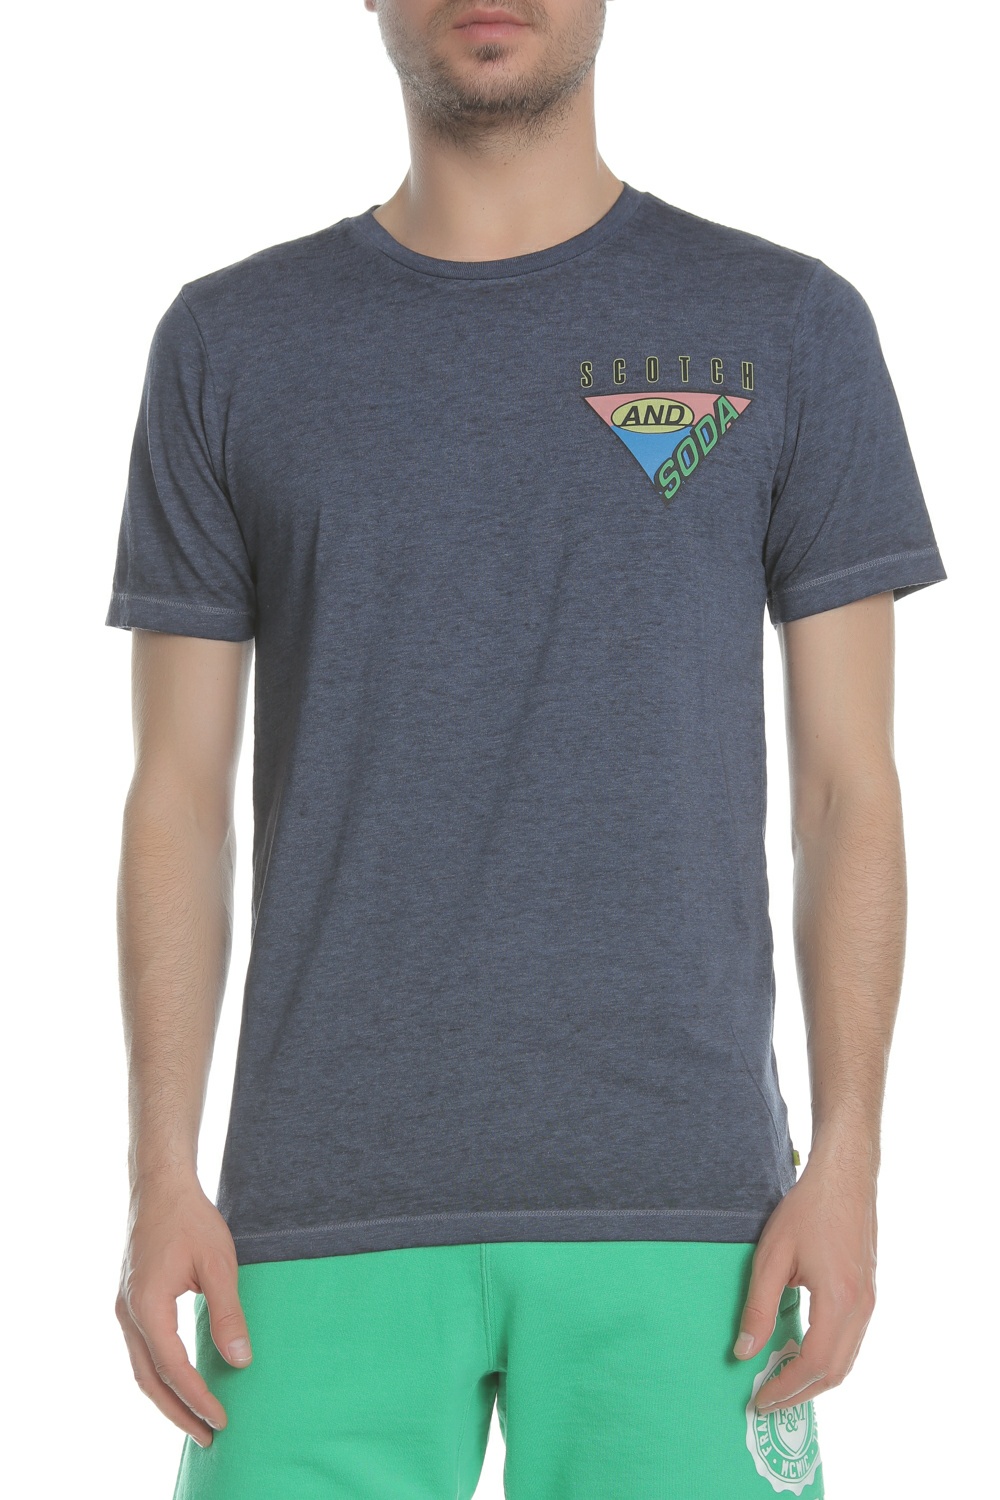 SCOTCH & SODA - Ανδρική μπλούζα Surf-inspired logo artwork tee μπλε Ανδρικά/Ρούχα/Μπλούζες/Κοντομάνικες